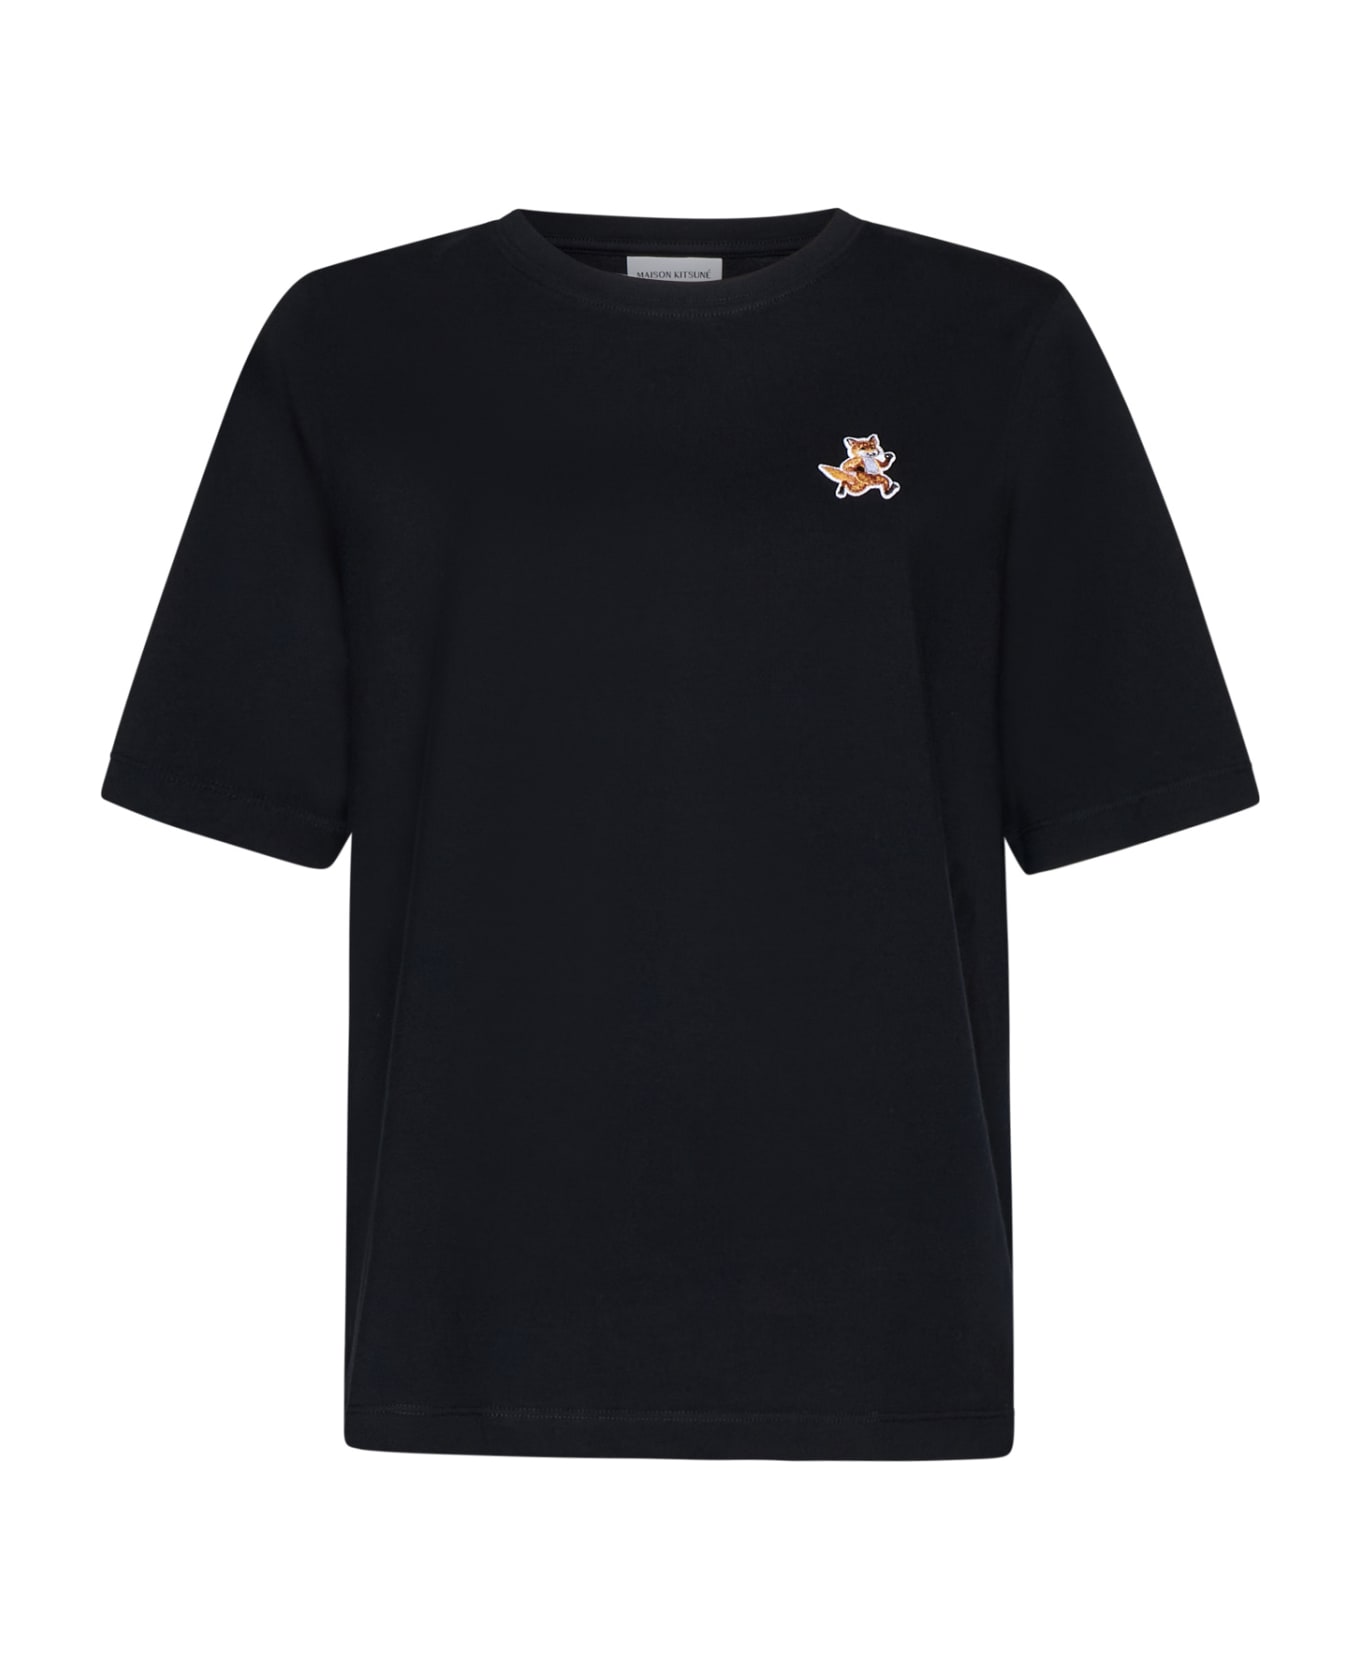 Maison Kitsuné T-Shirt - Black Tシャツ